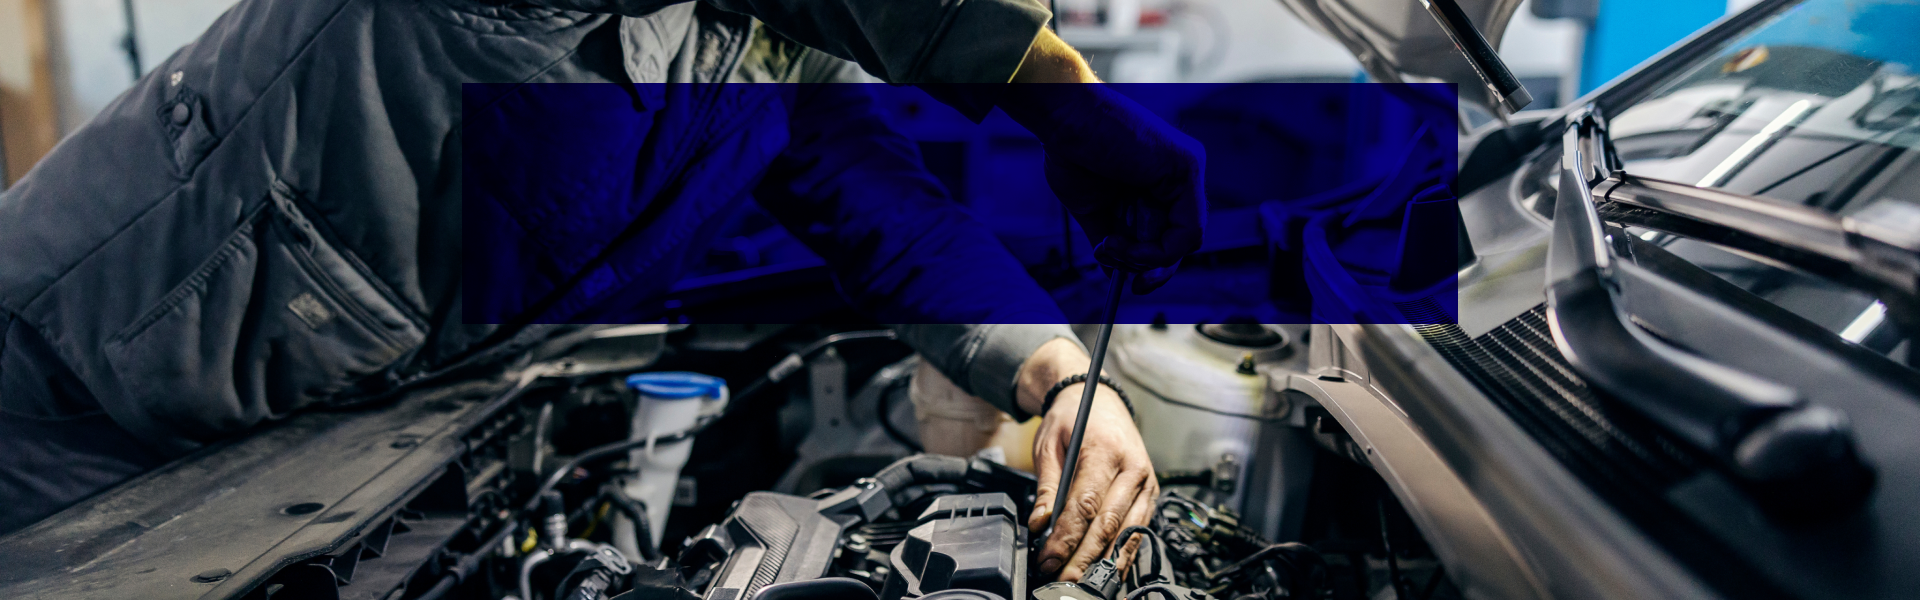 Car Repairing | Premier Automotive Sales & Service